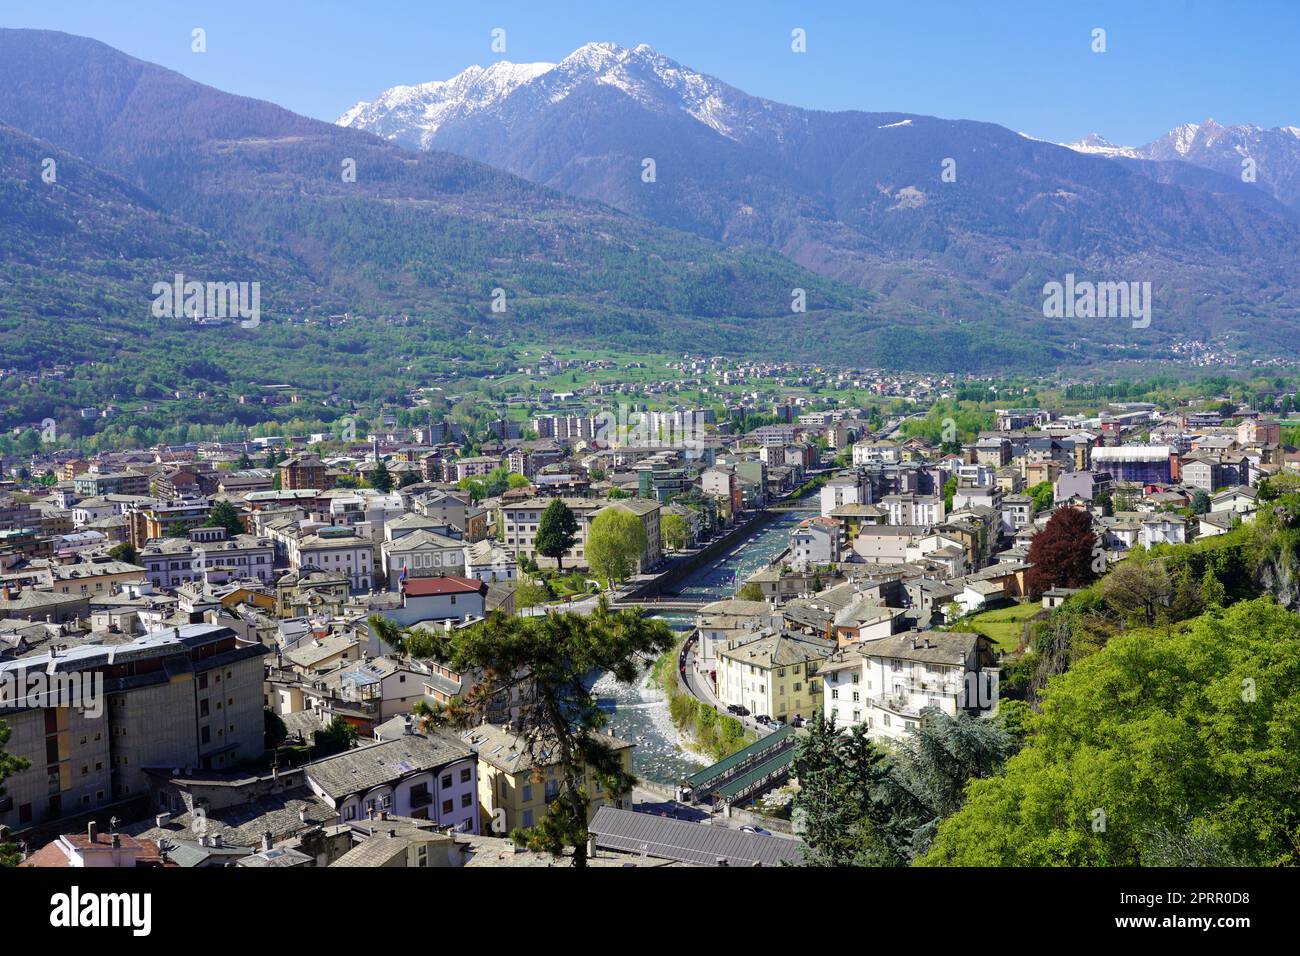 Luftaufnahme der Stadt Sondrio im Valtellina-Tal in der Lombardei, Italien Stockfoto